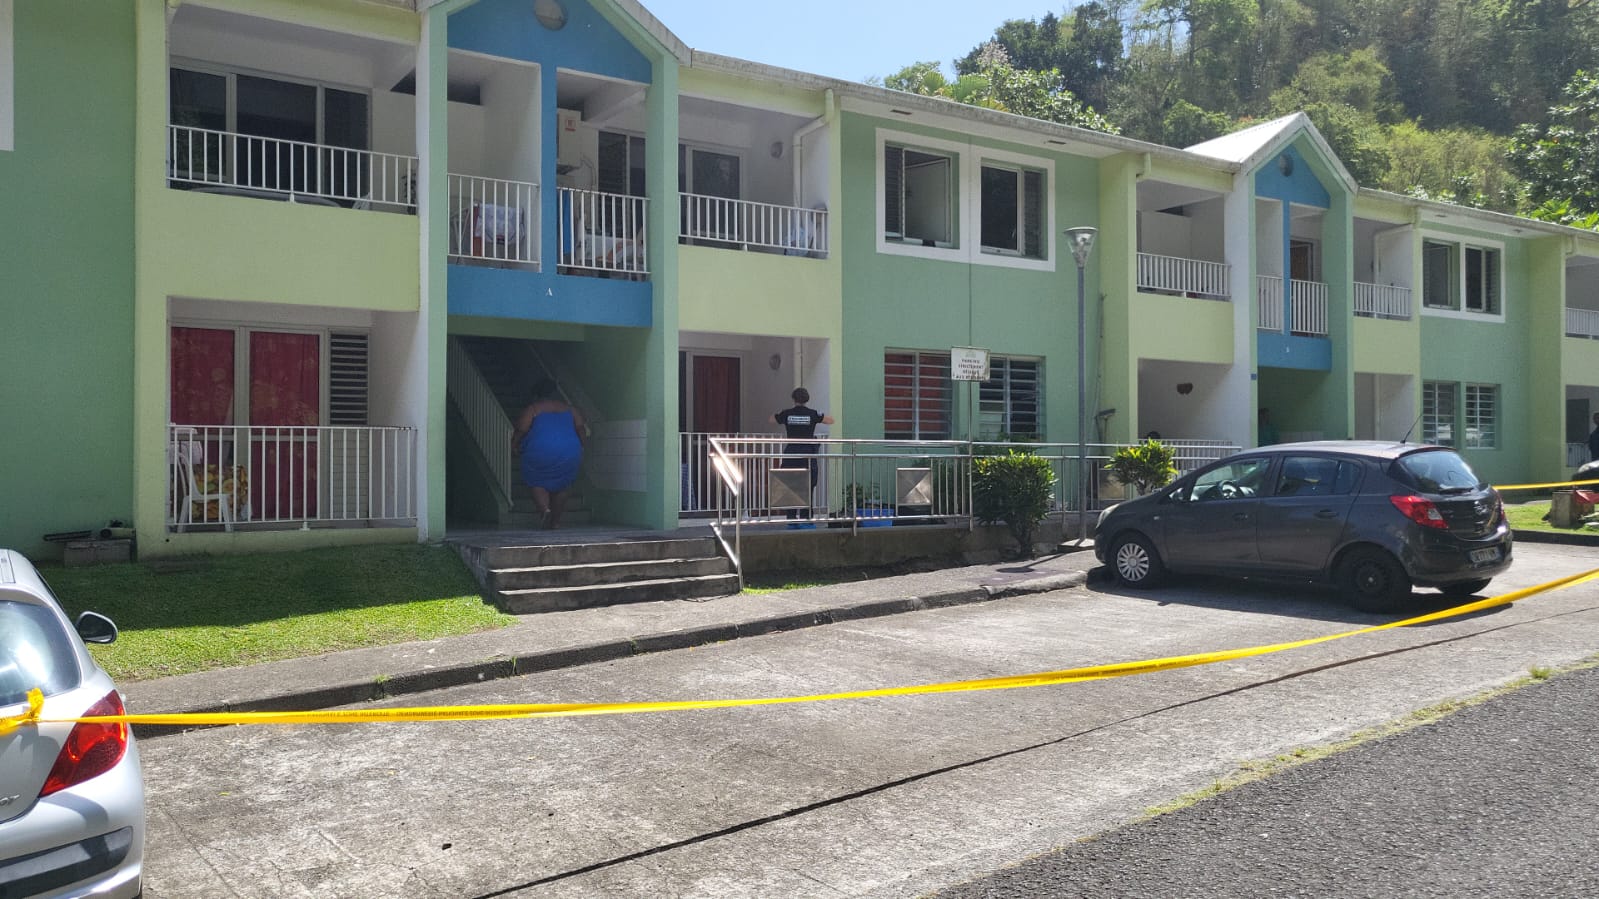     Un homme de 47 ans tué par balle à son domicile de Grand Rivière

